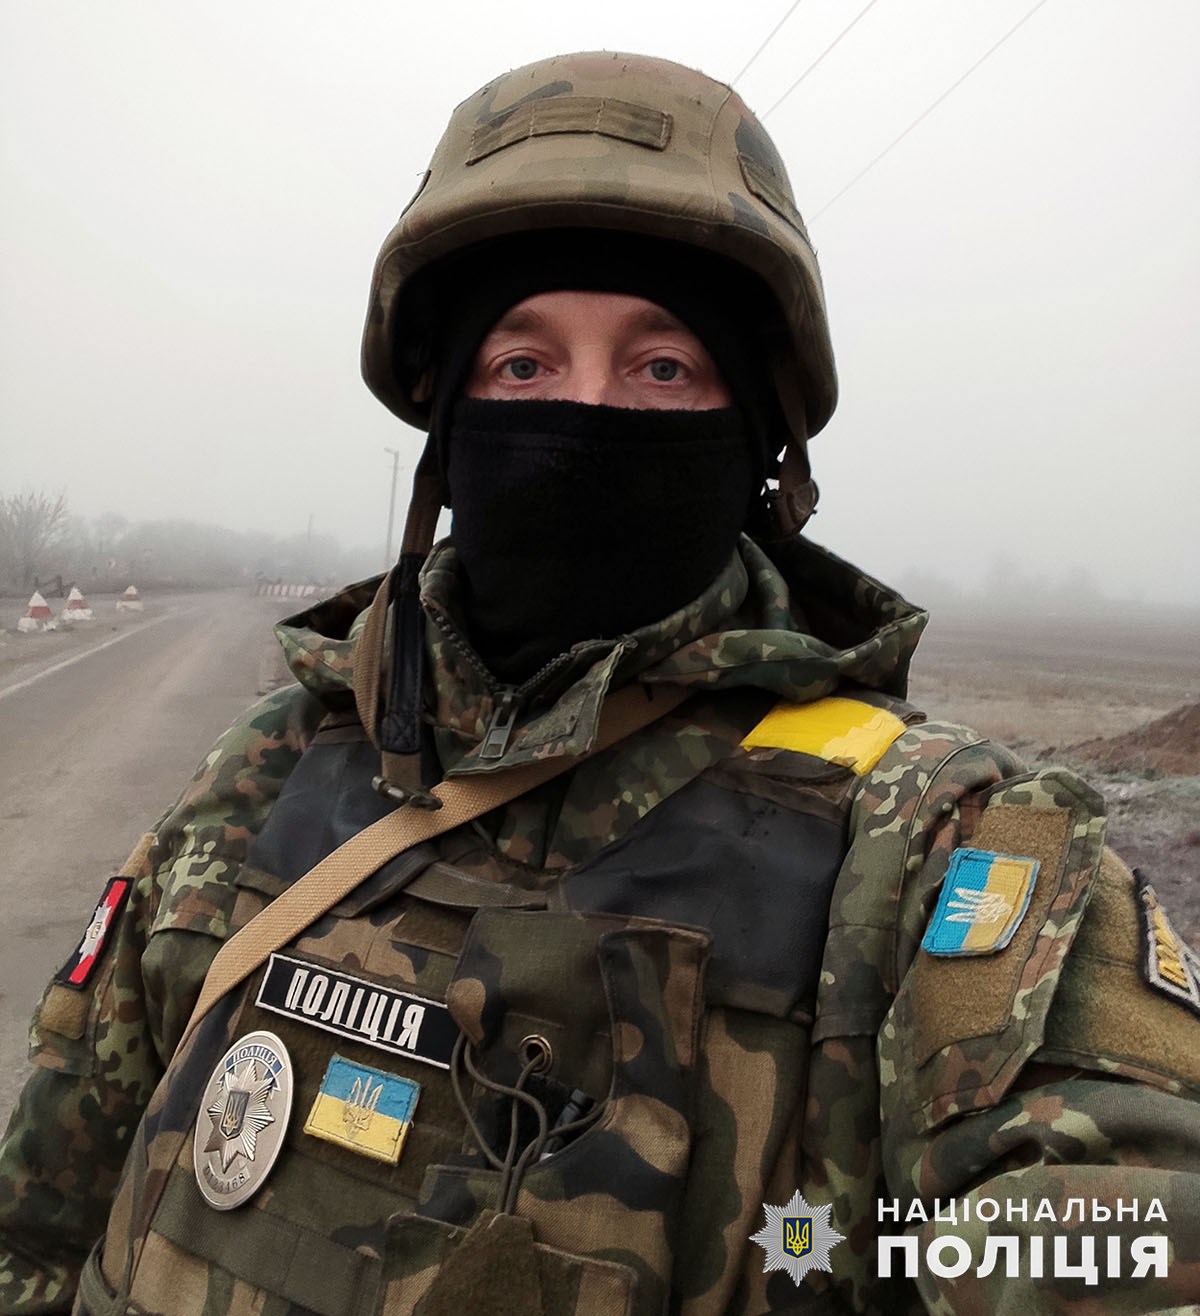 «Пішов у «Лють», аби закінчити війну, що розпочалася в 2014 році», - поліцейський Донеччини Олександр Тесленко